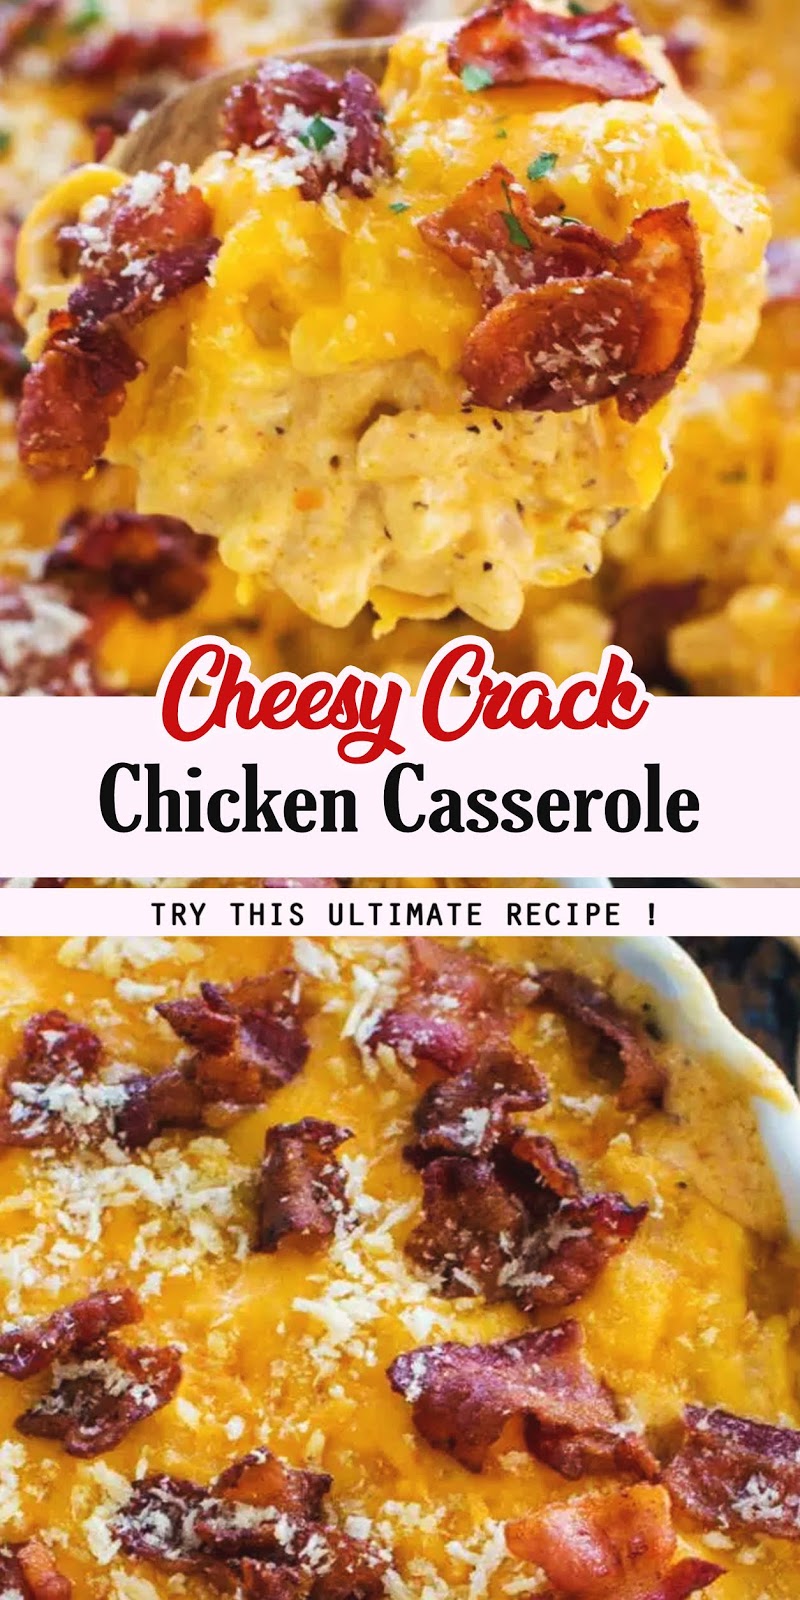 Cheesy Crack Chicken Casserole